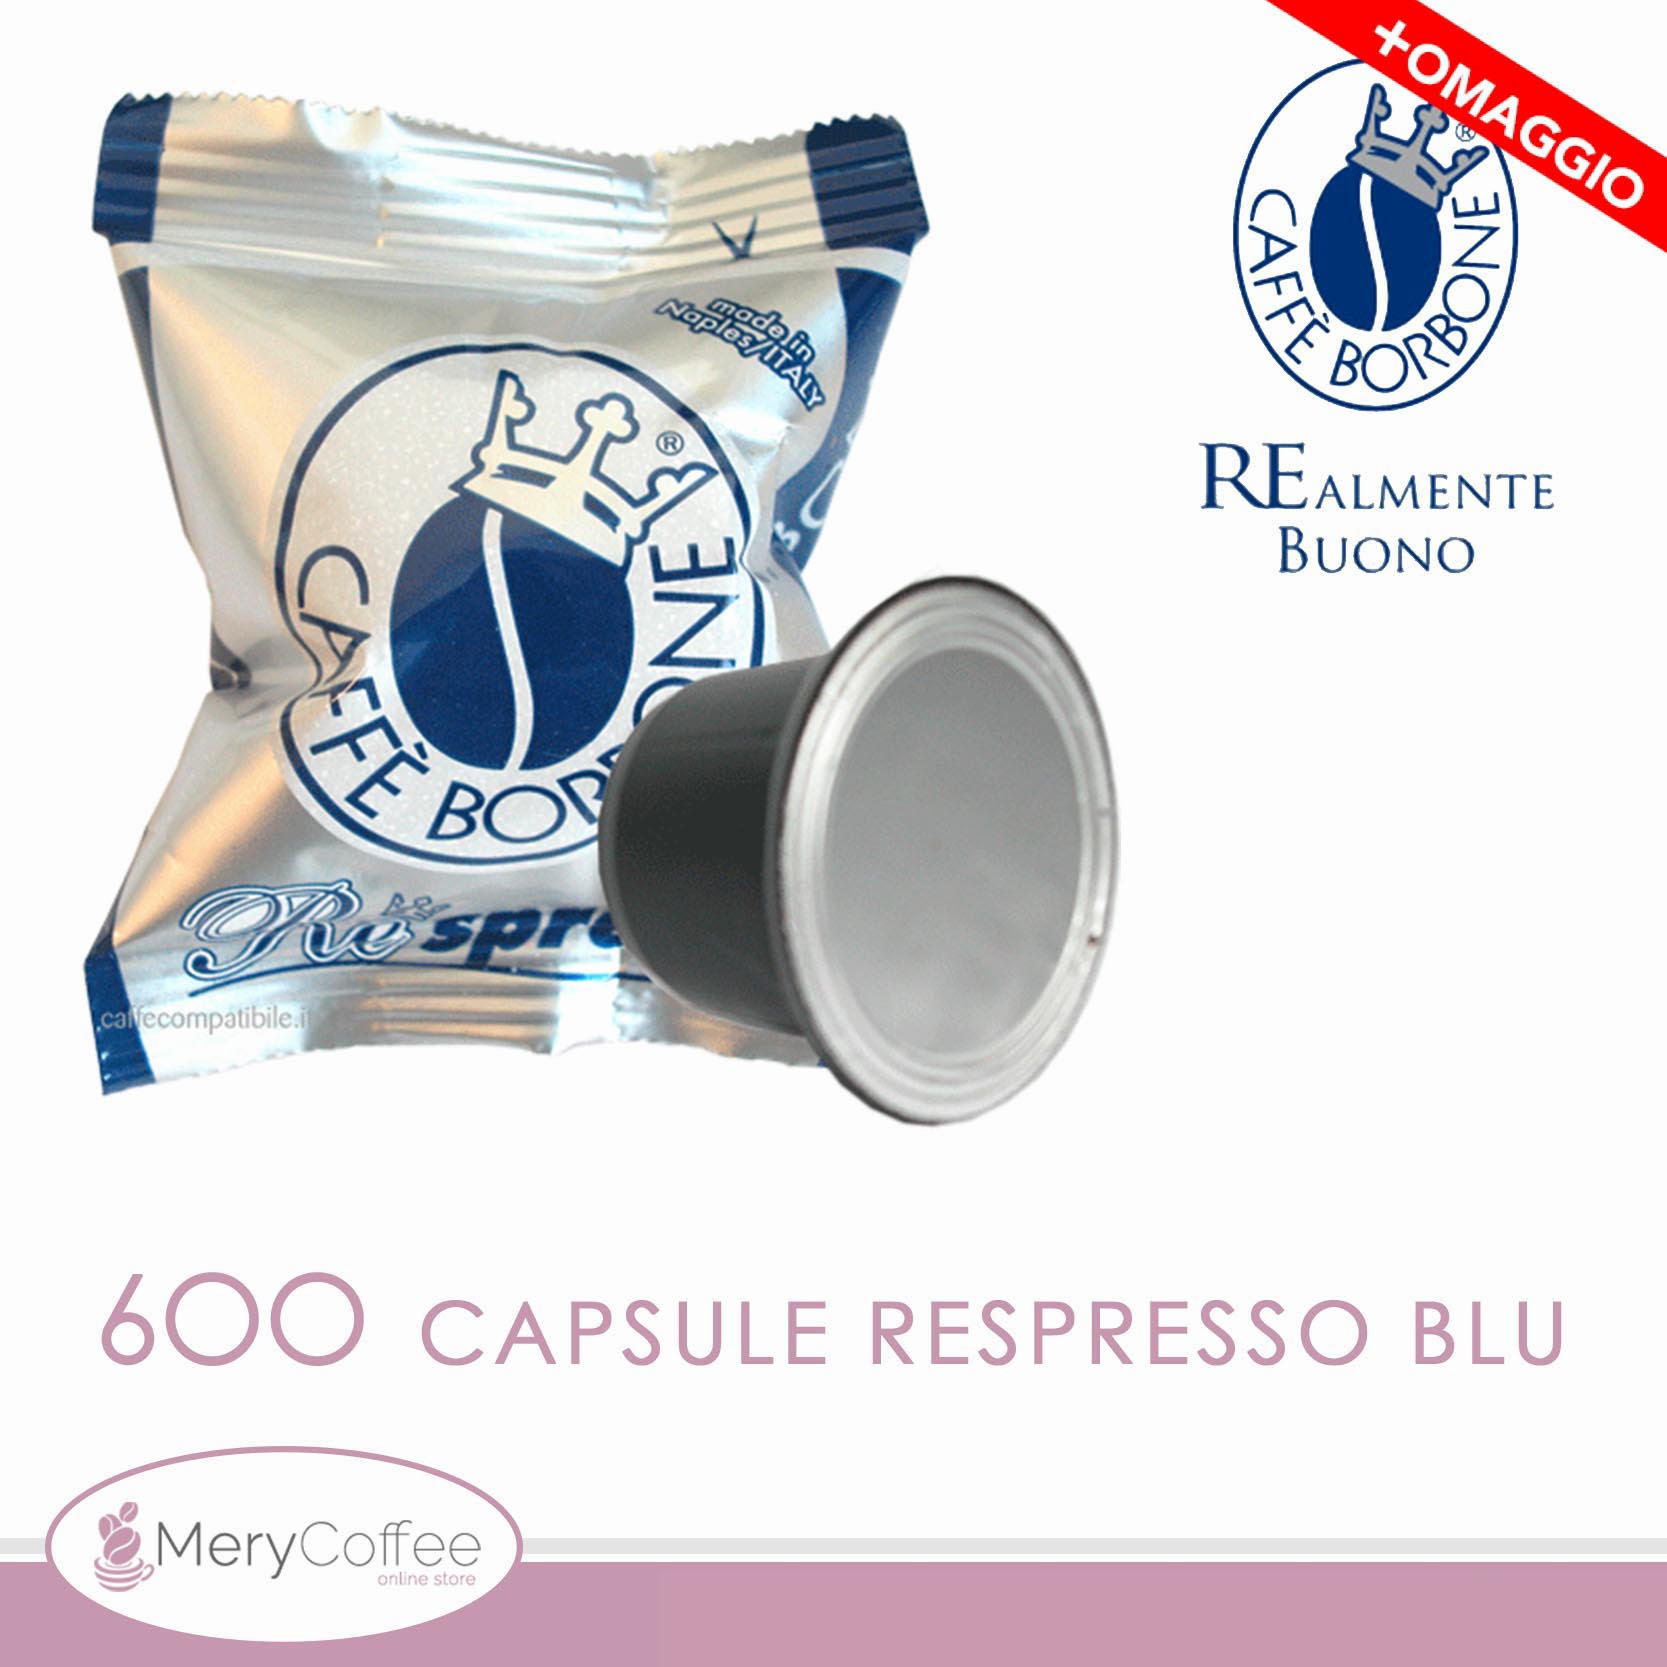 600 Capsule cialde Borbone REspresso Miscela BLU Compatibili Nespresso*+omaggio  - MeryCoffee